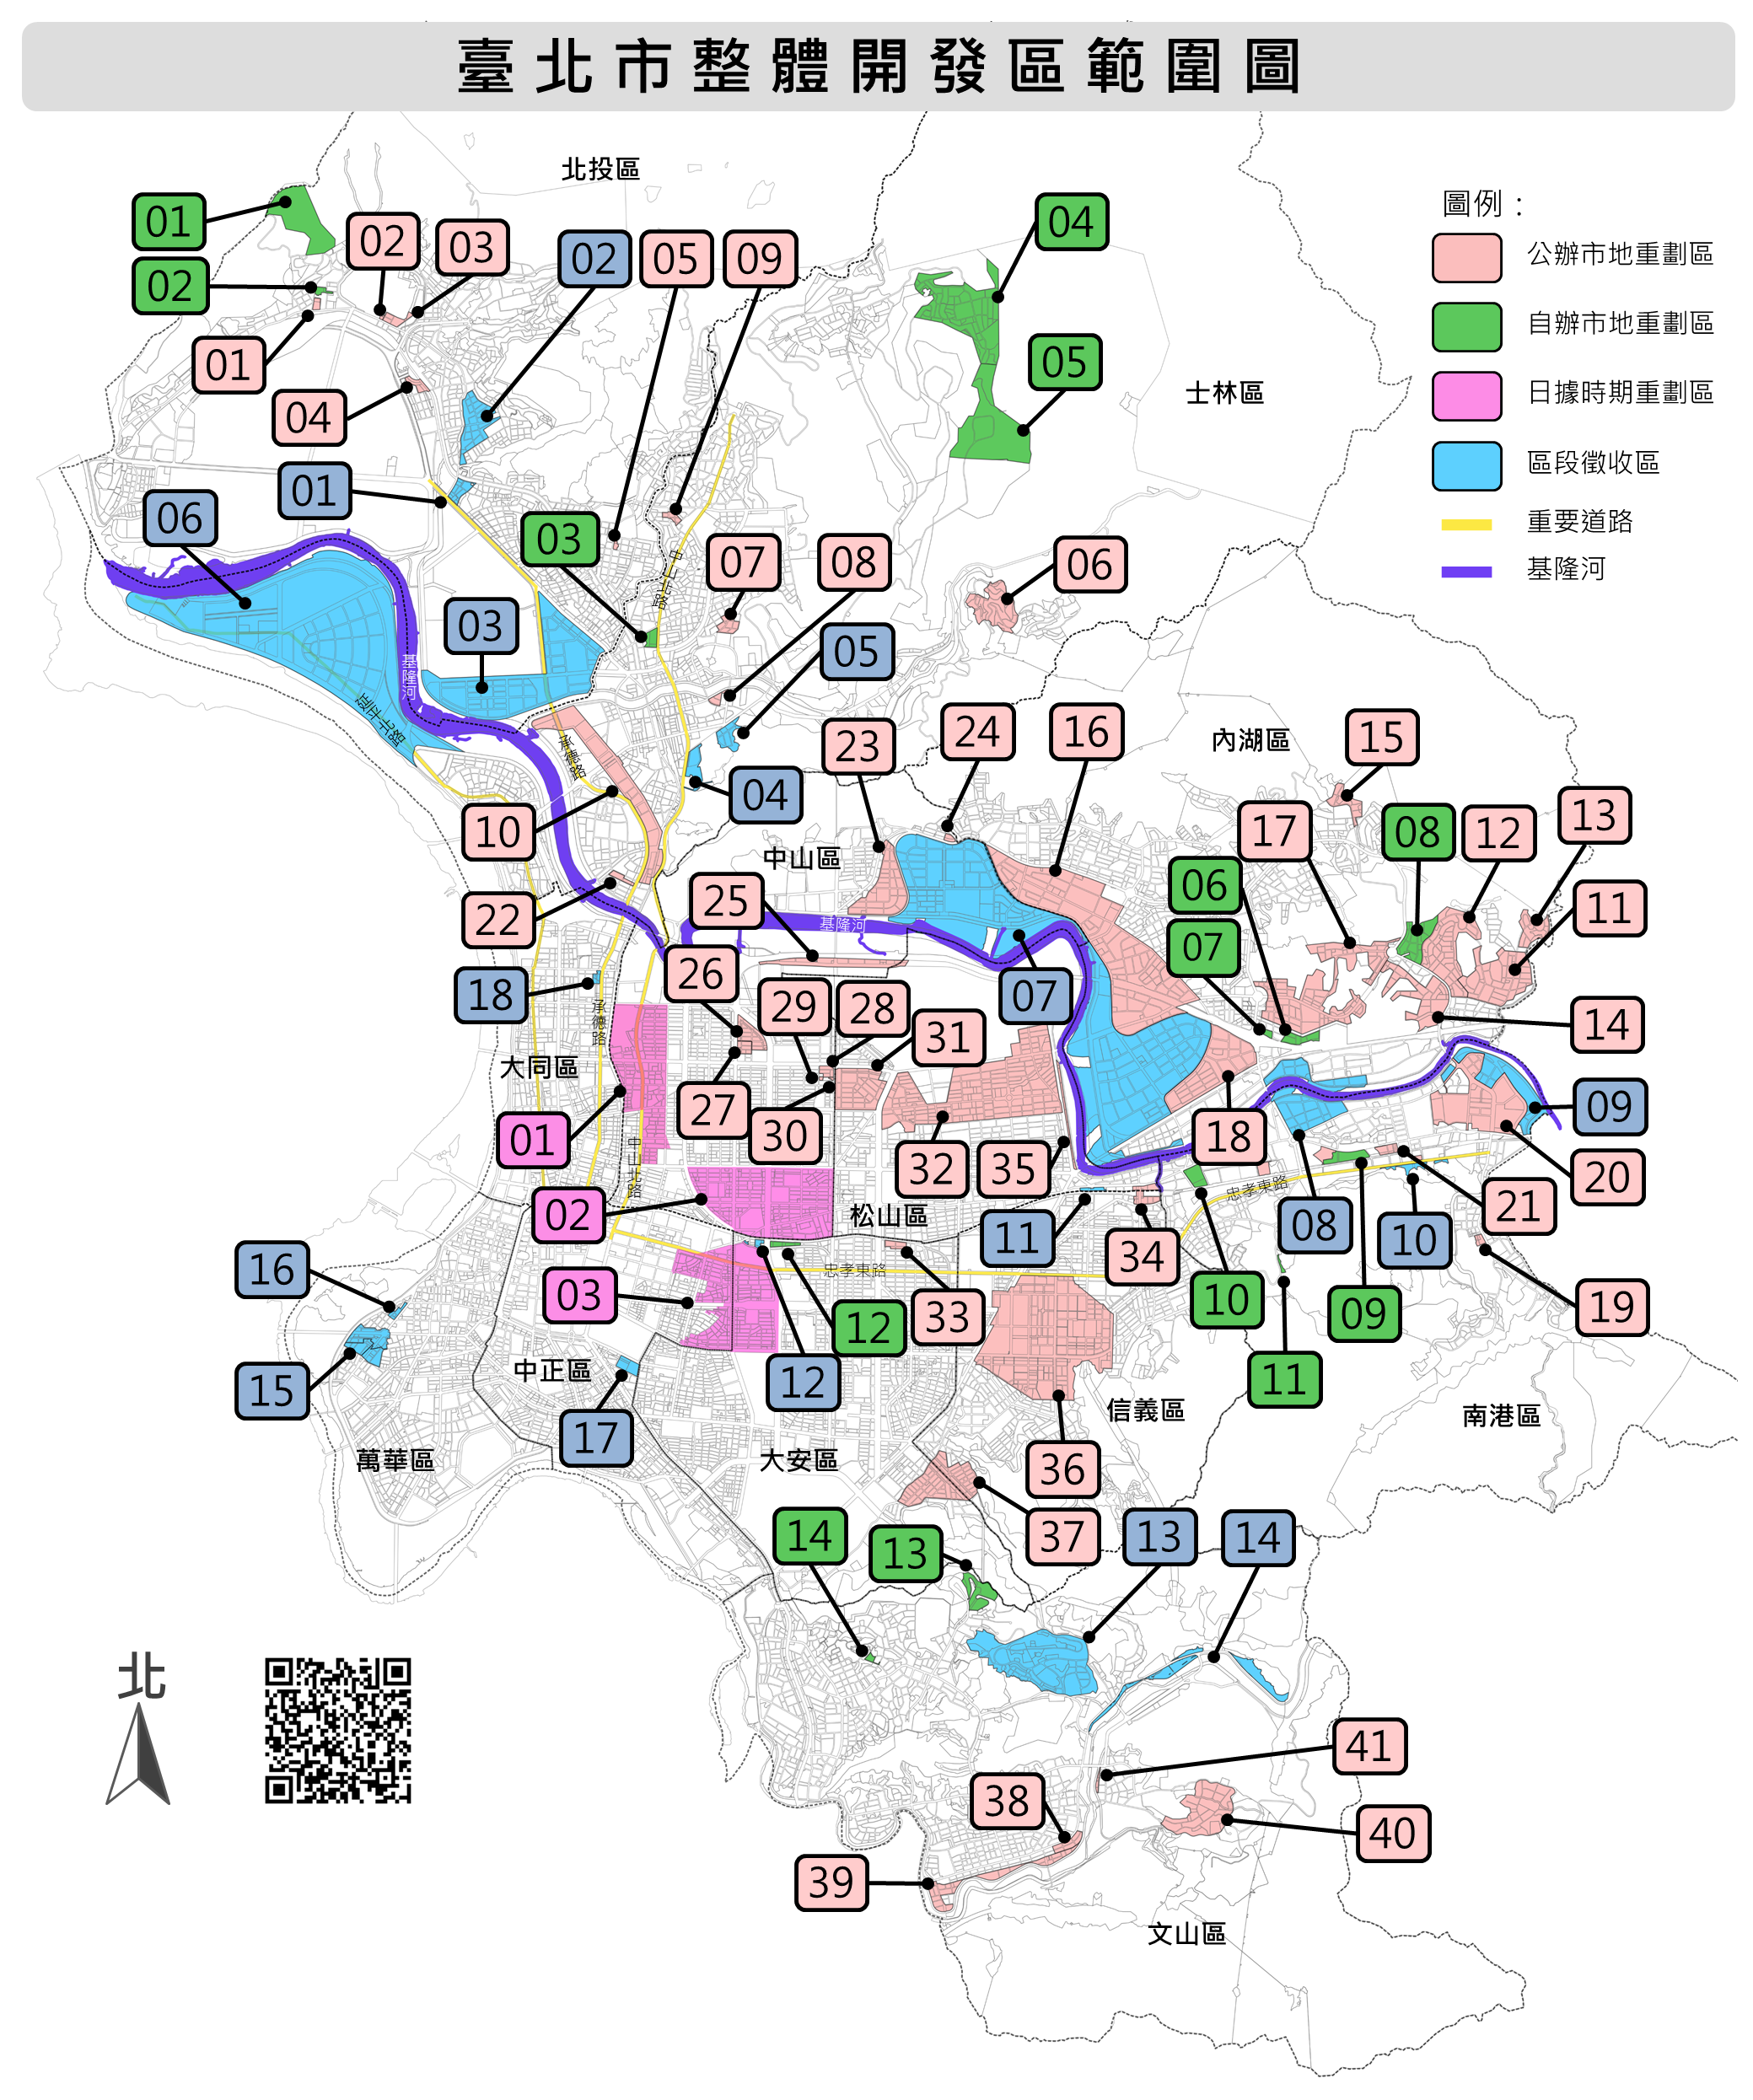 臺北市整體開發區範圍圖